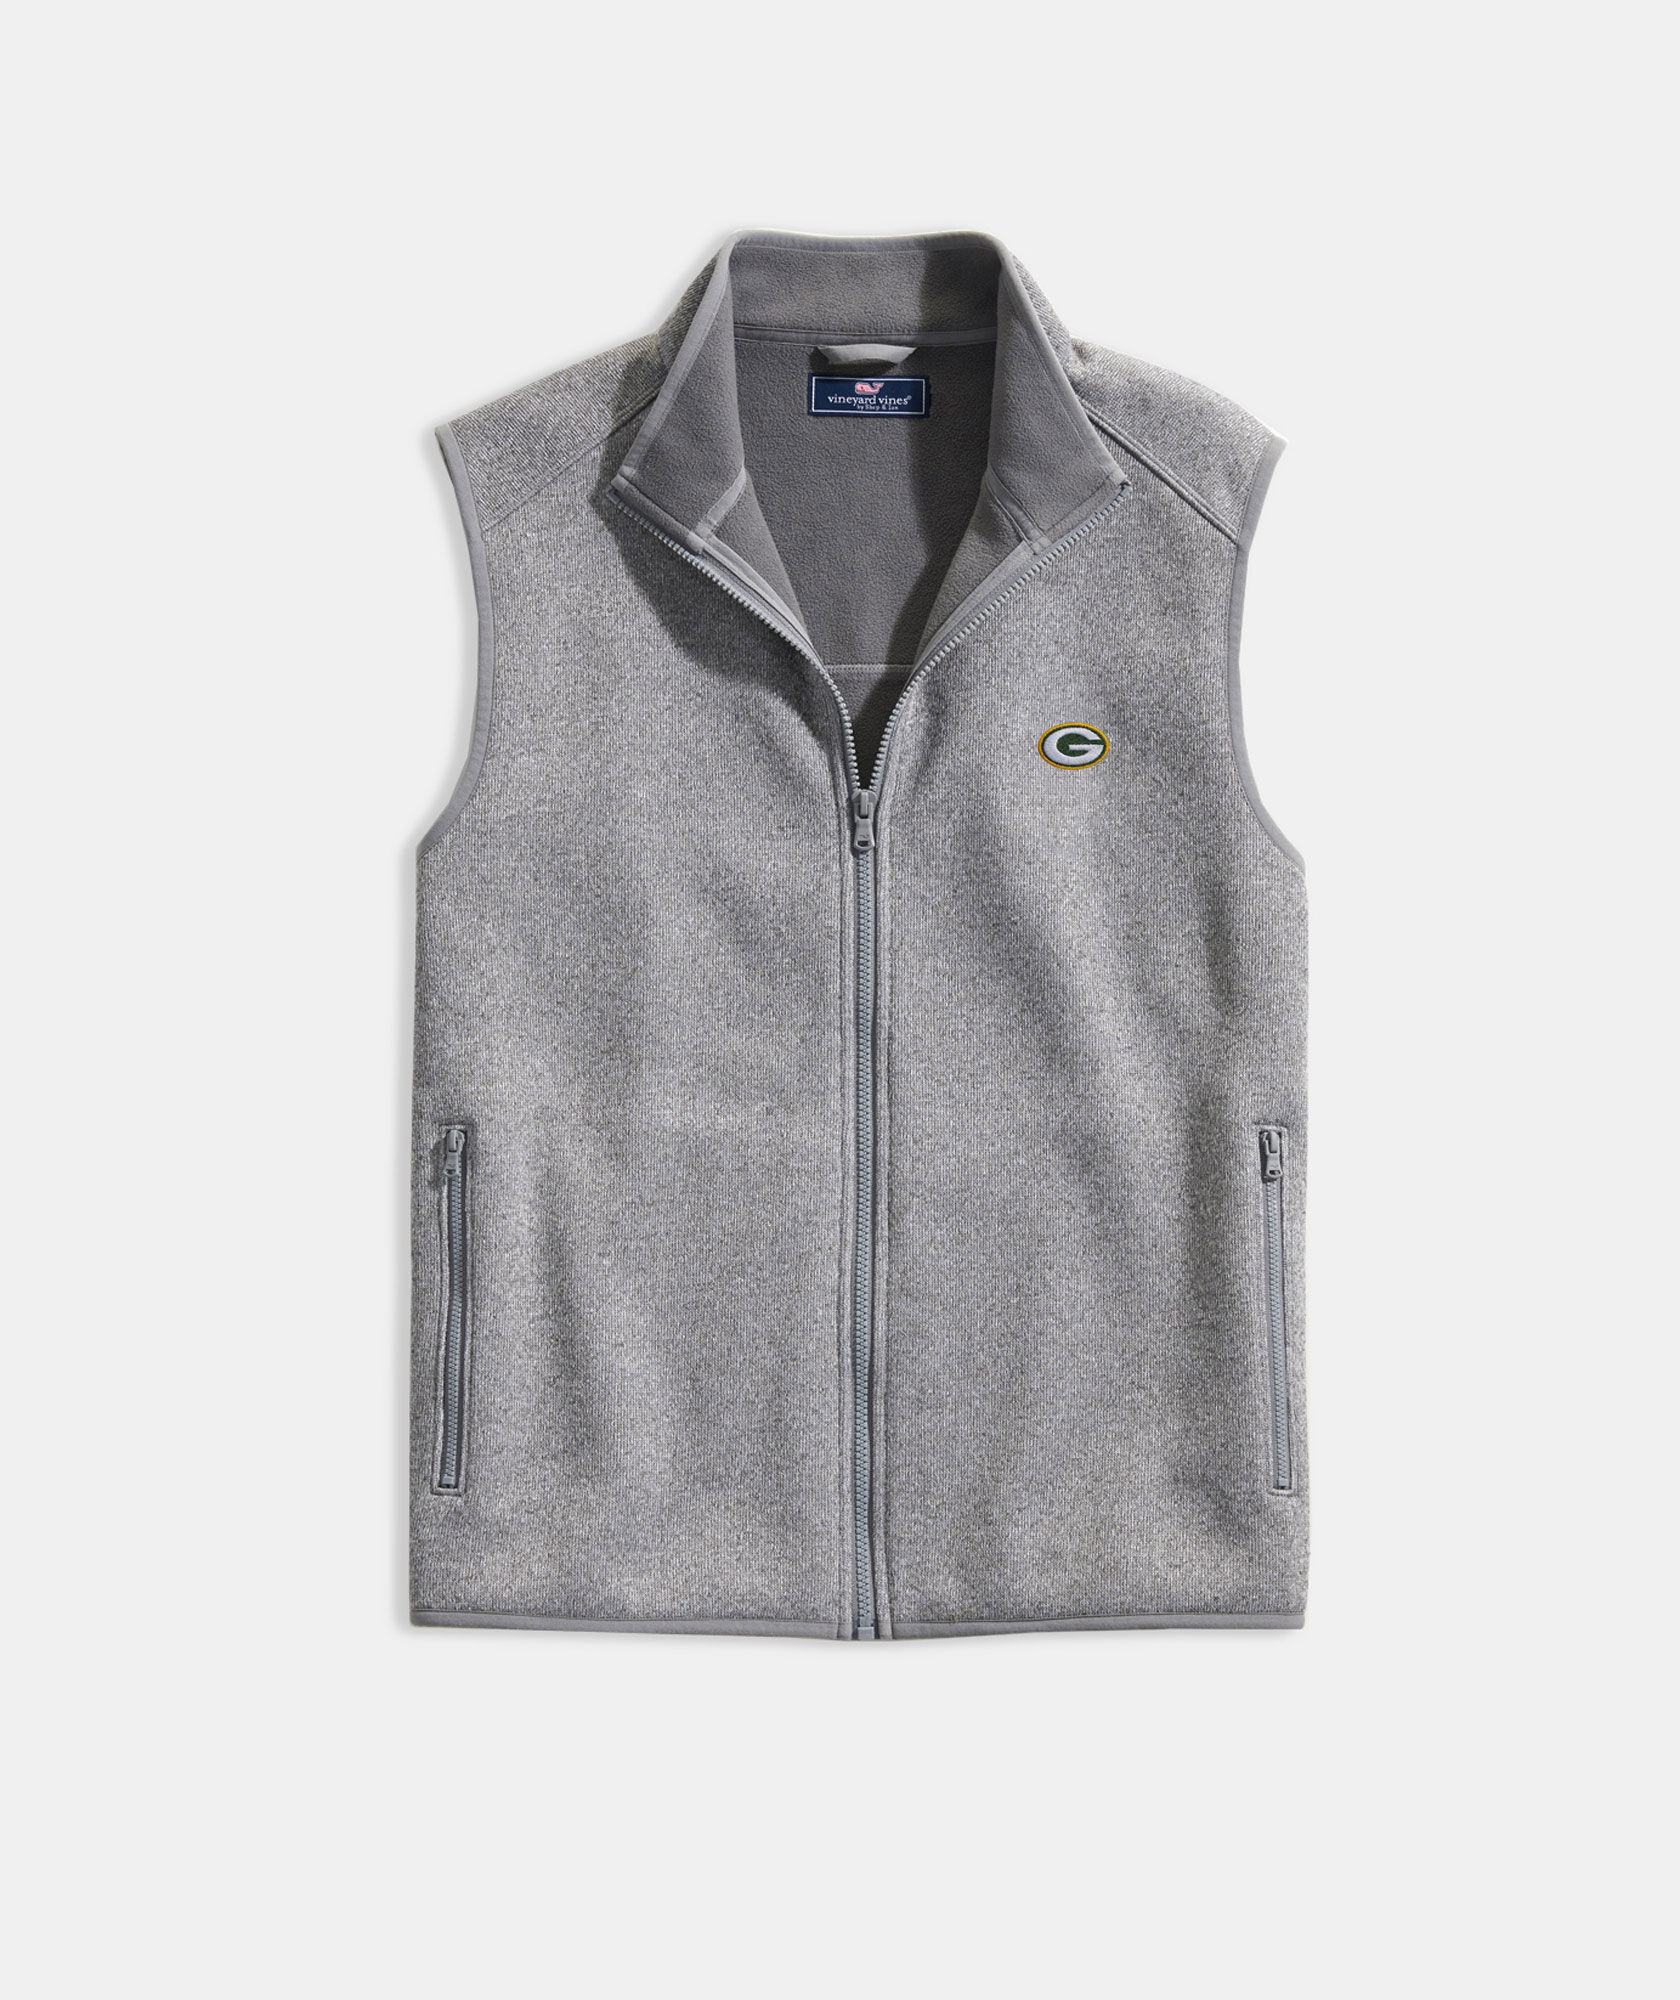 Green Bay Packers Mountain Sweater Fleece Vest